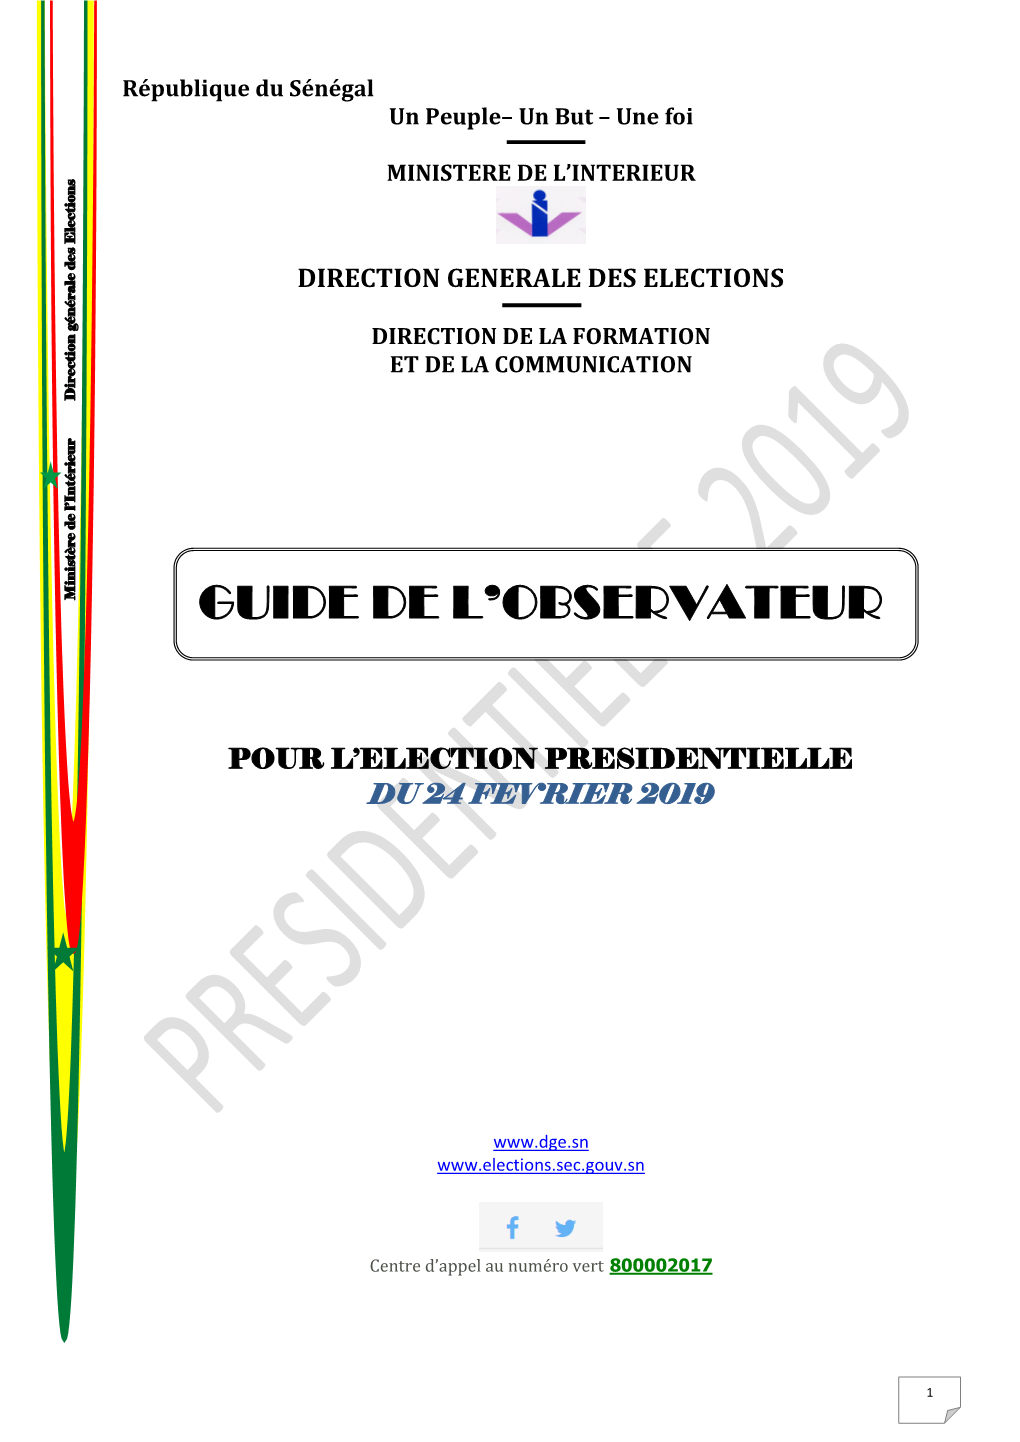 GUIDE DE L'observateur Présidentielle 2019-FIN.Pdf